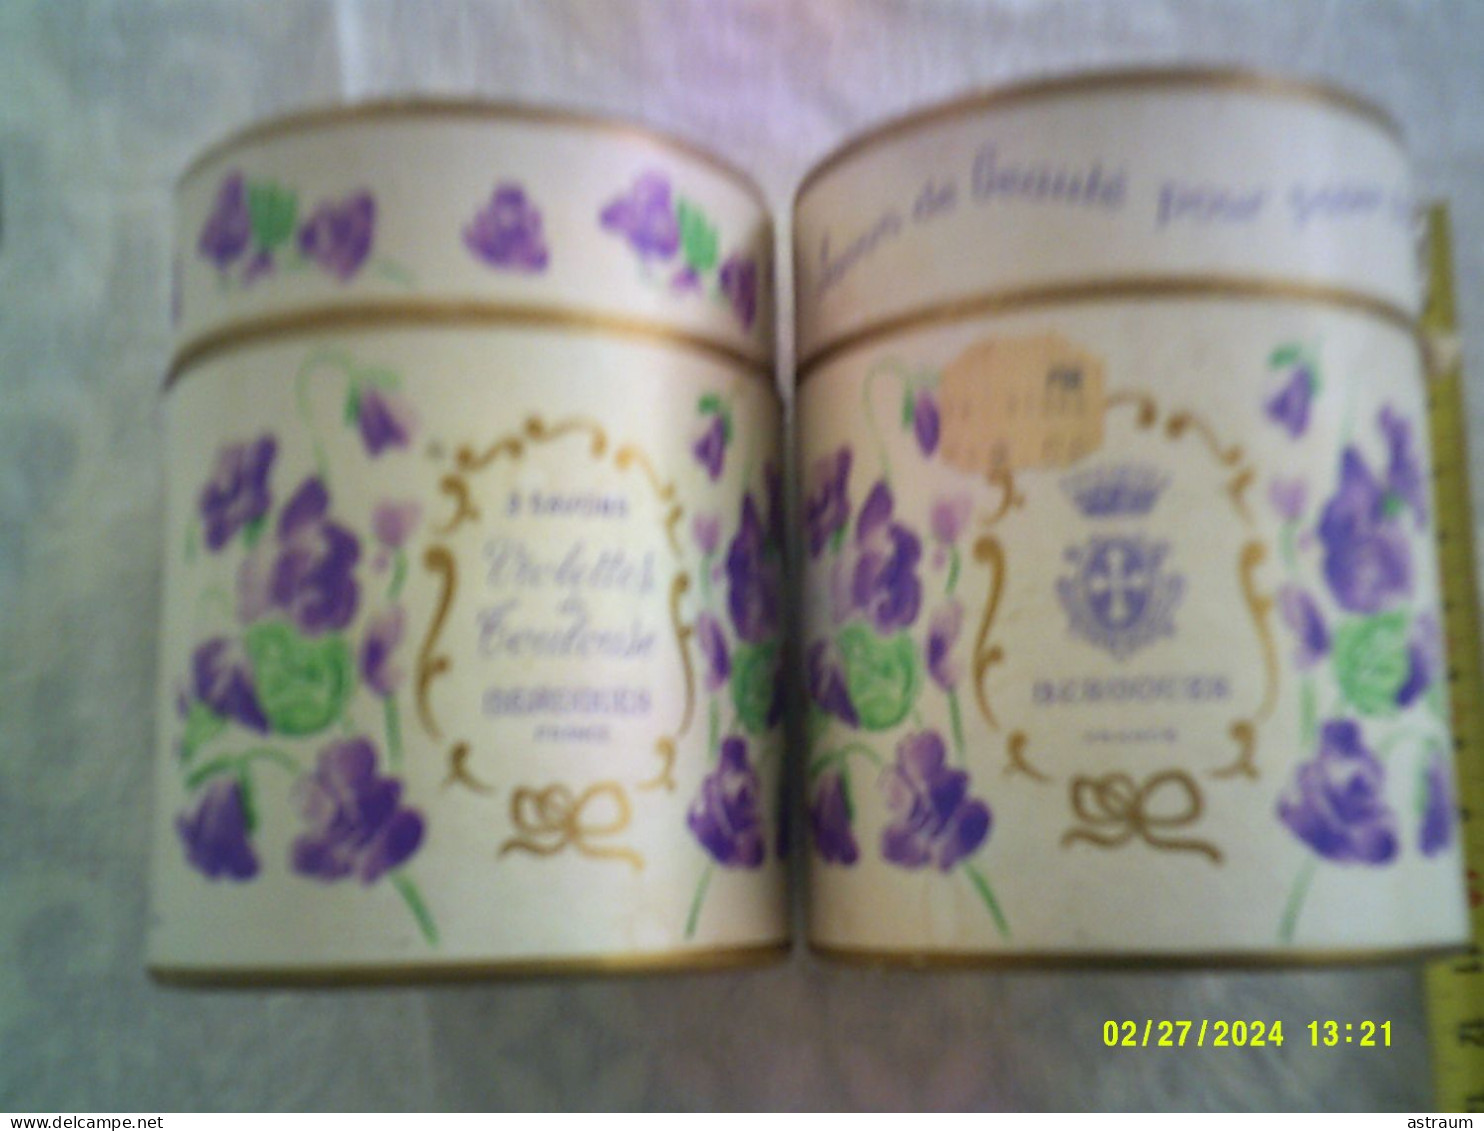 2 Coffret Vintage Parfum - Berdoues - Violettes De Toulouse - 80ml + 1 Boite Avec 1 Savon - Miniatures Femmes (avec Boite)